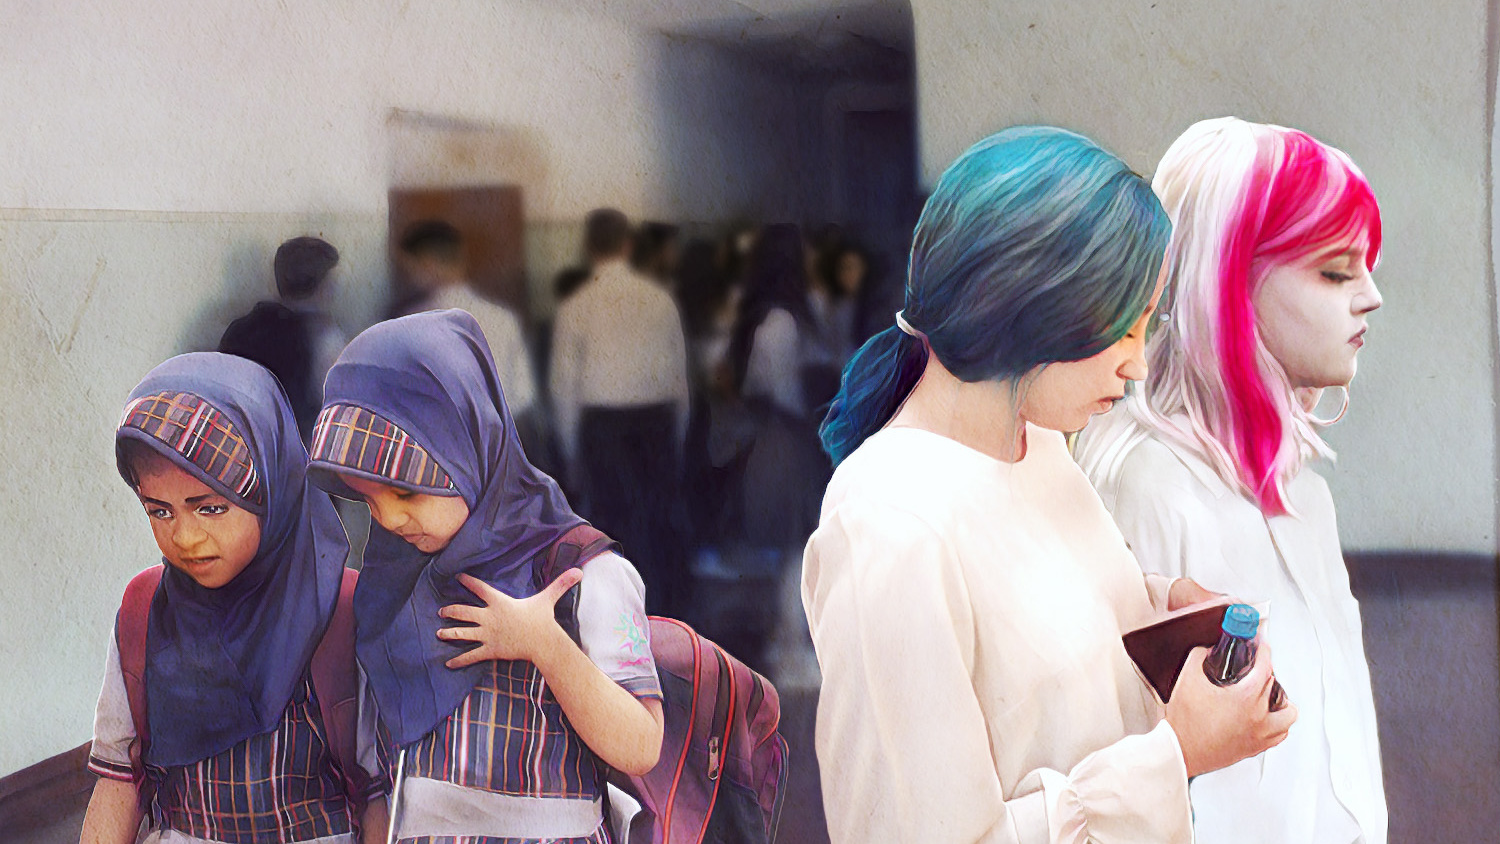 «А розово-зеленые волосы уместны?» Как разделились мнения челябинцев по поводу школьниц в хиджабах